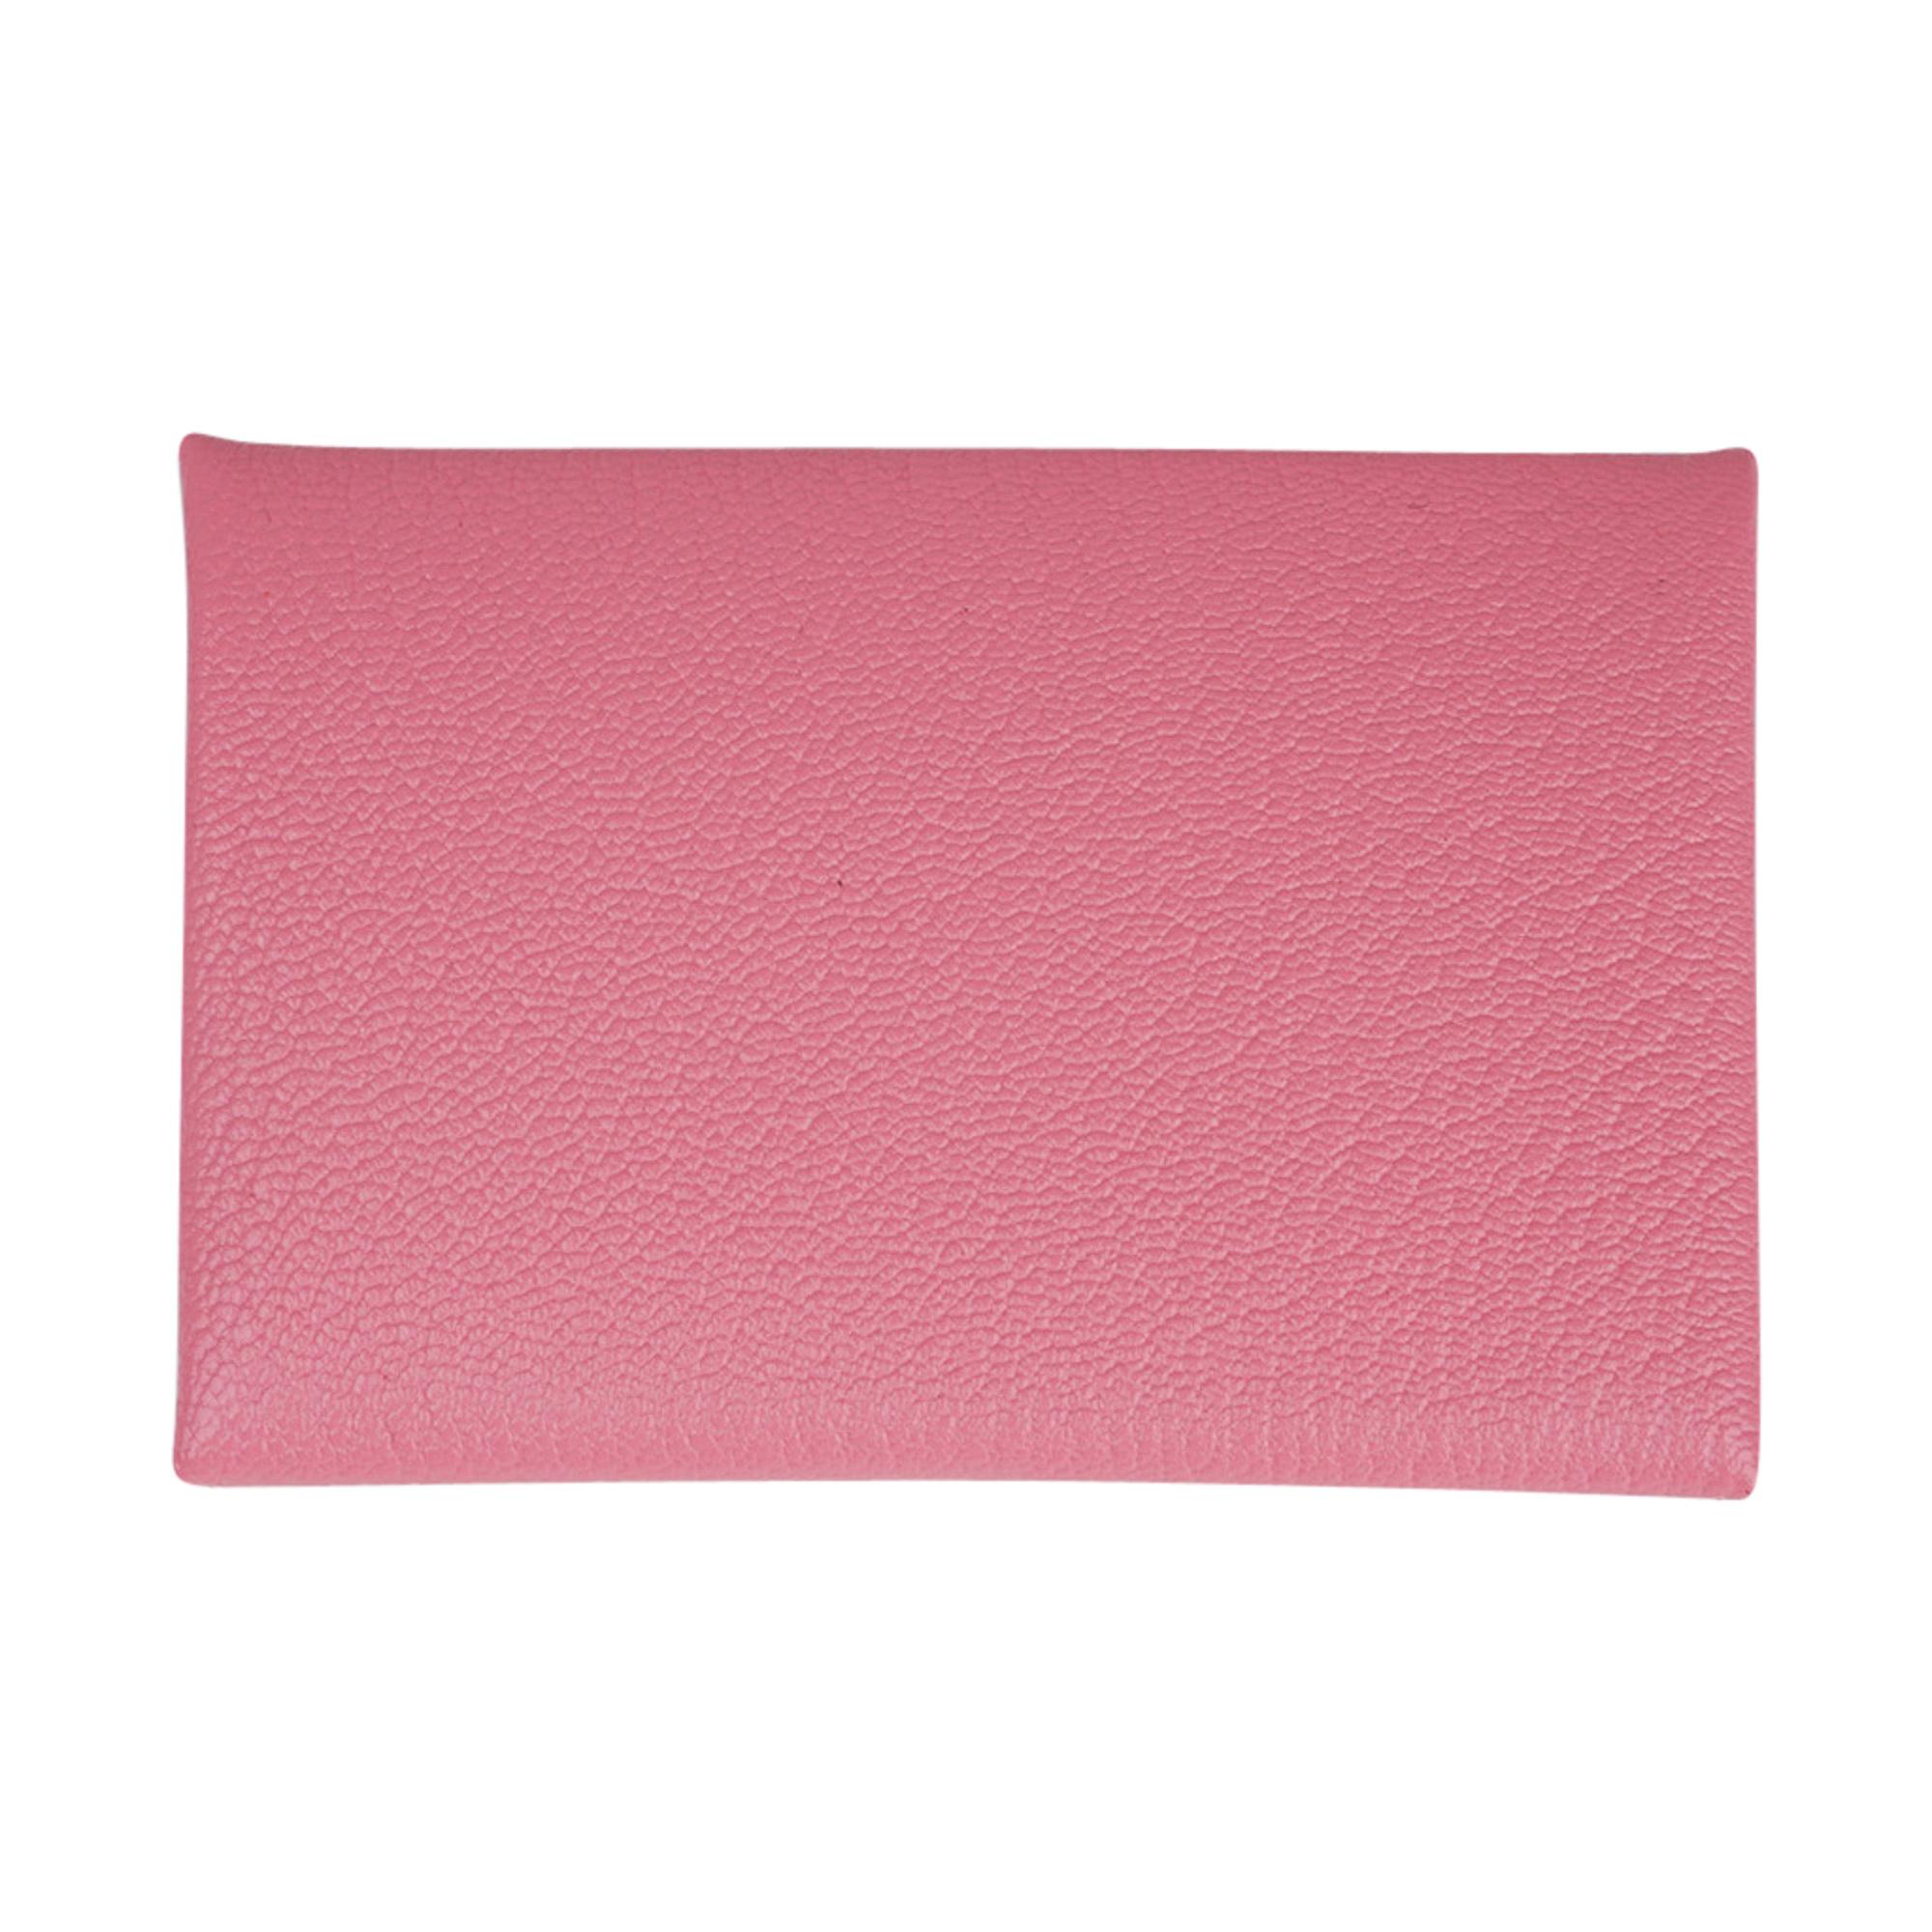 NEW Hermes Calvi Epsom ID credit card holder wallet in Mauve Sylvestre  (Pink)